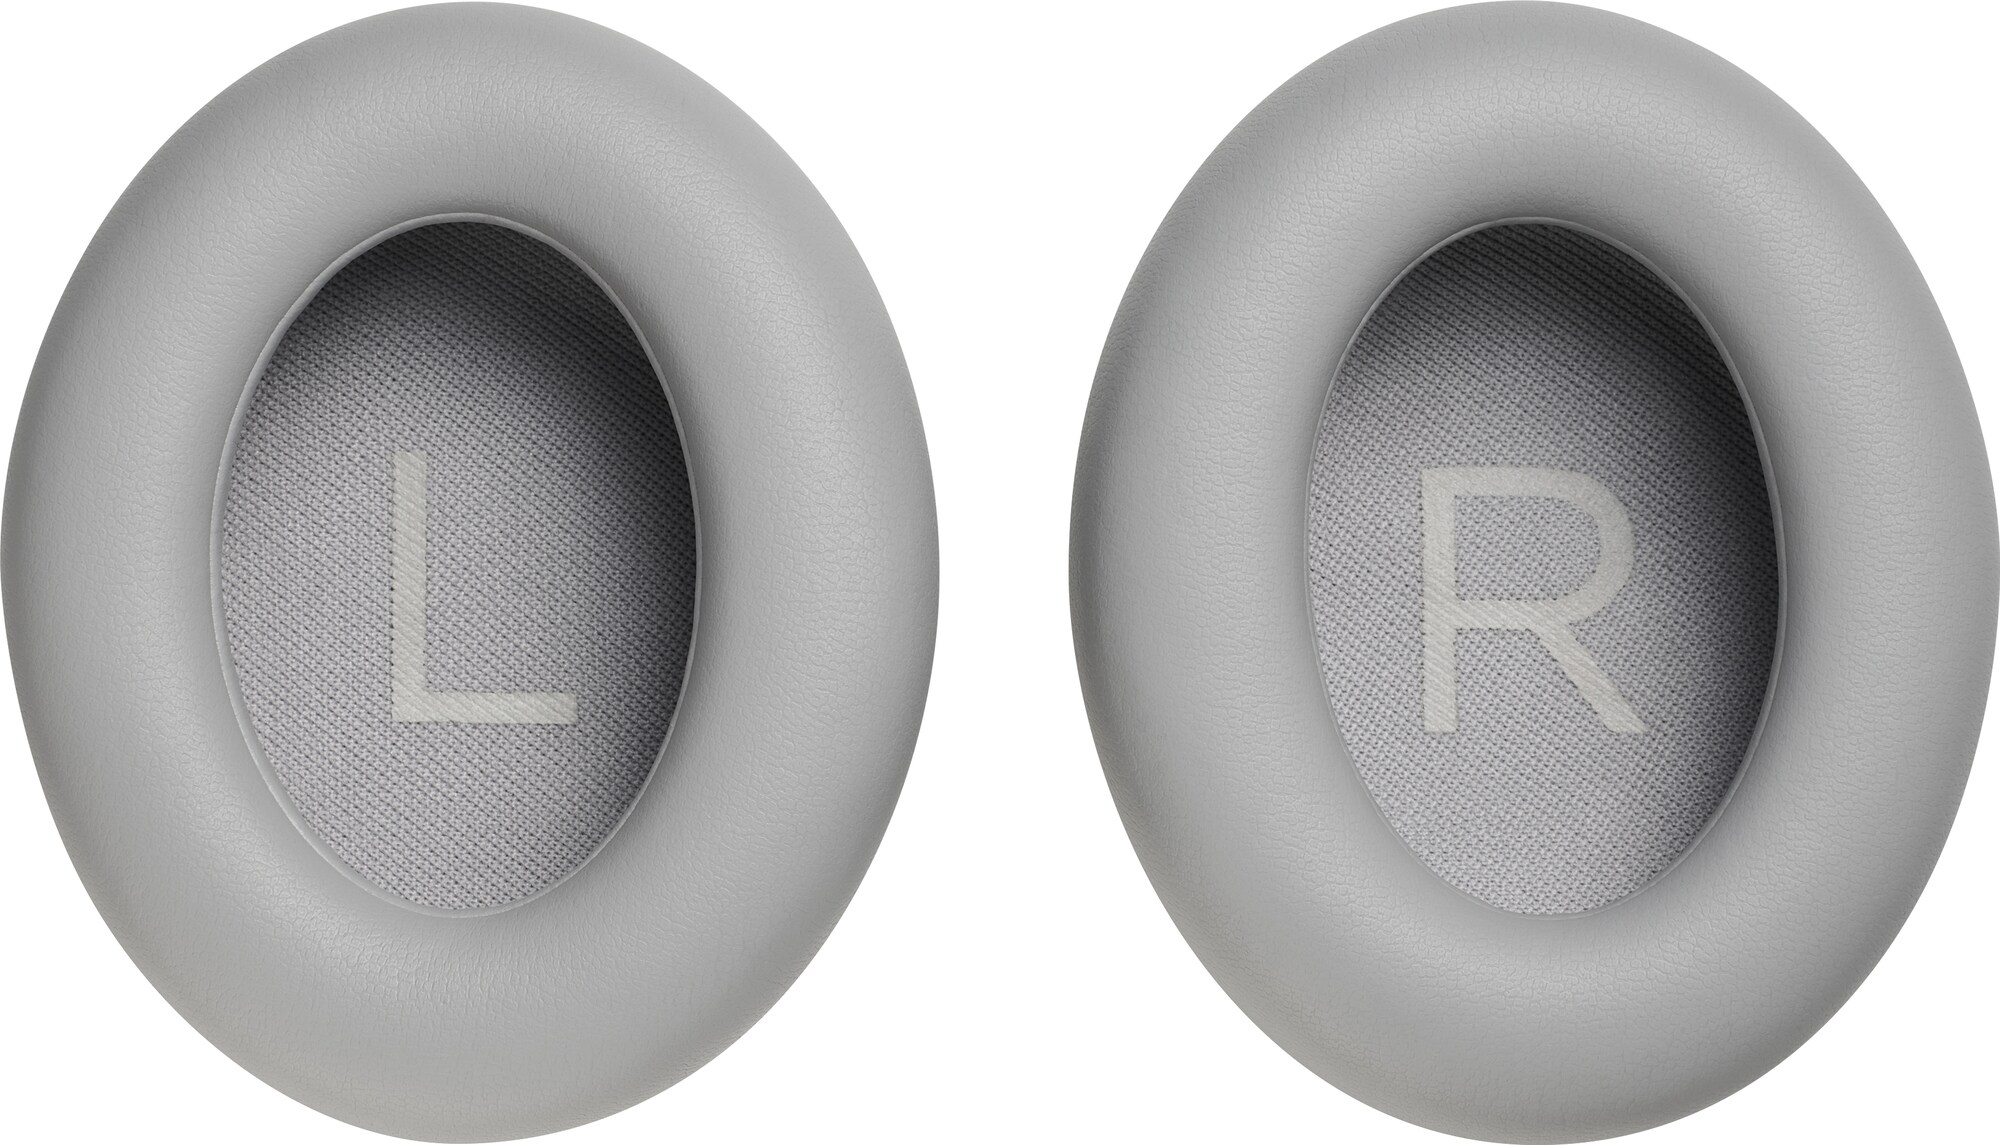 Noise Cancelling Headphones 700 pudesæt til høretelefoner (sølv) | Elgiganten